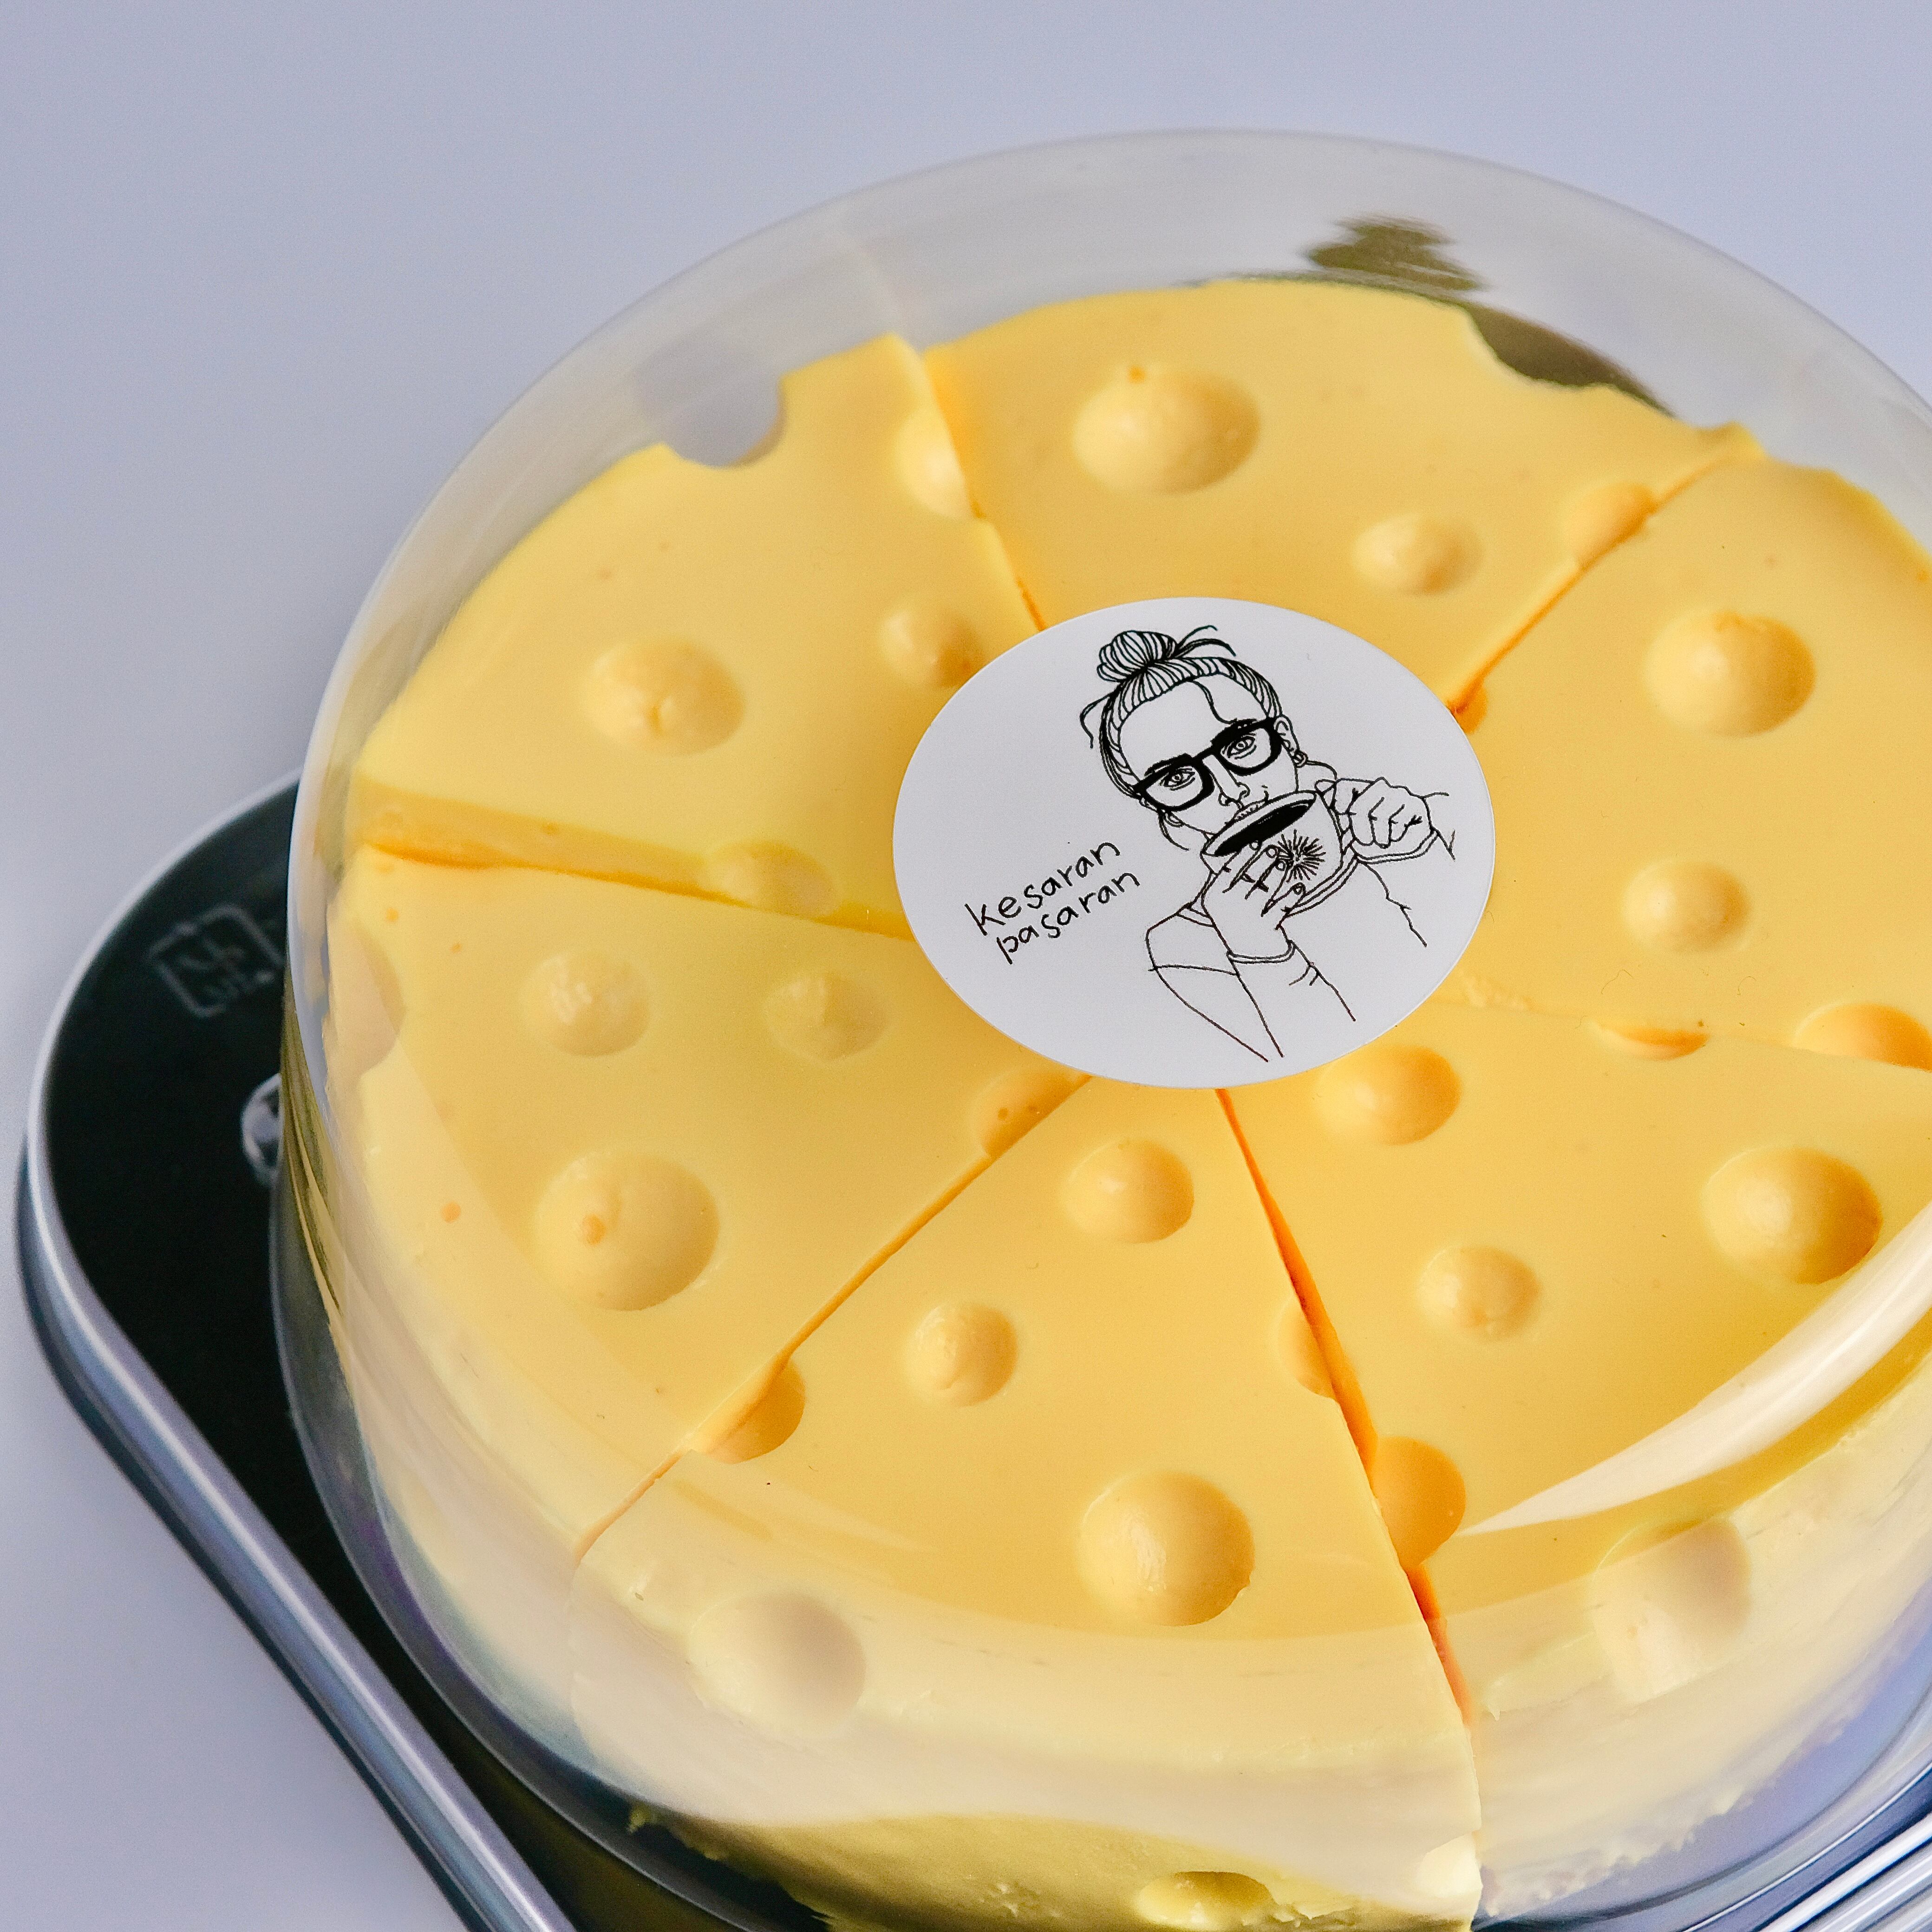 5号サイズ ケサパサのチーズみたいなチーズケーキ 冷凍発送 Espesso Bar ケサランパサラン